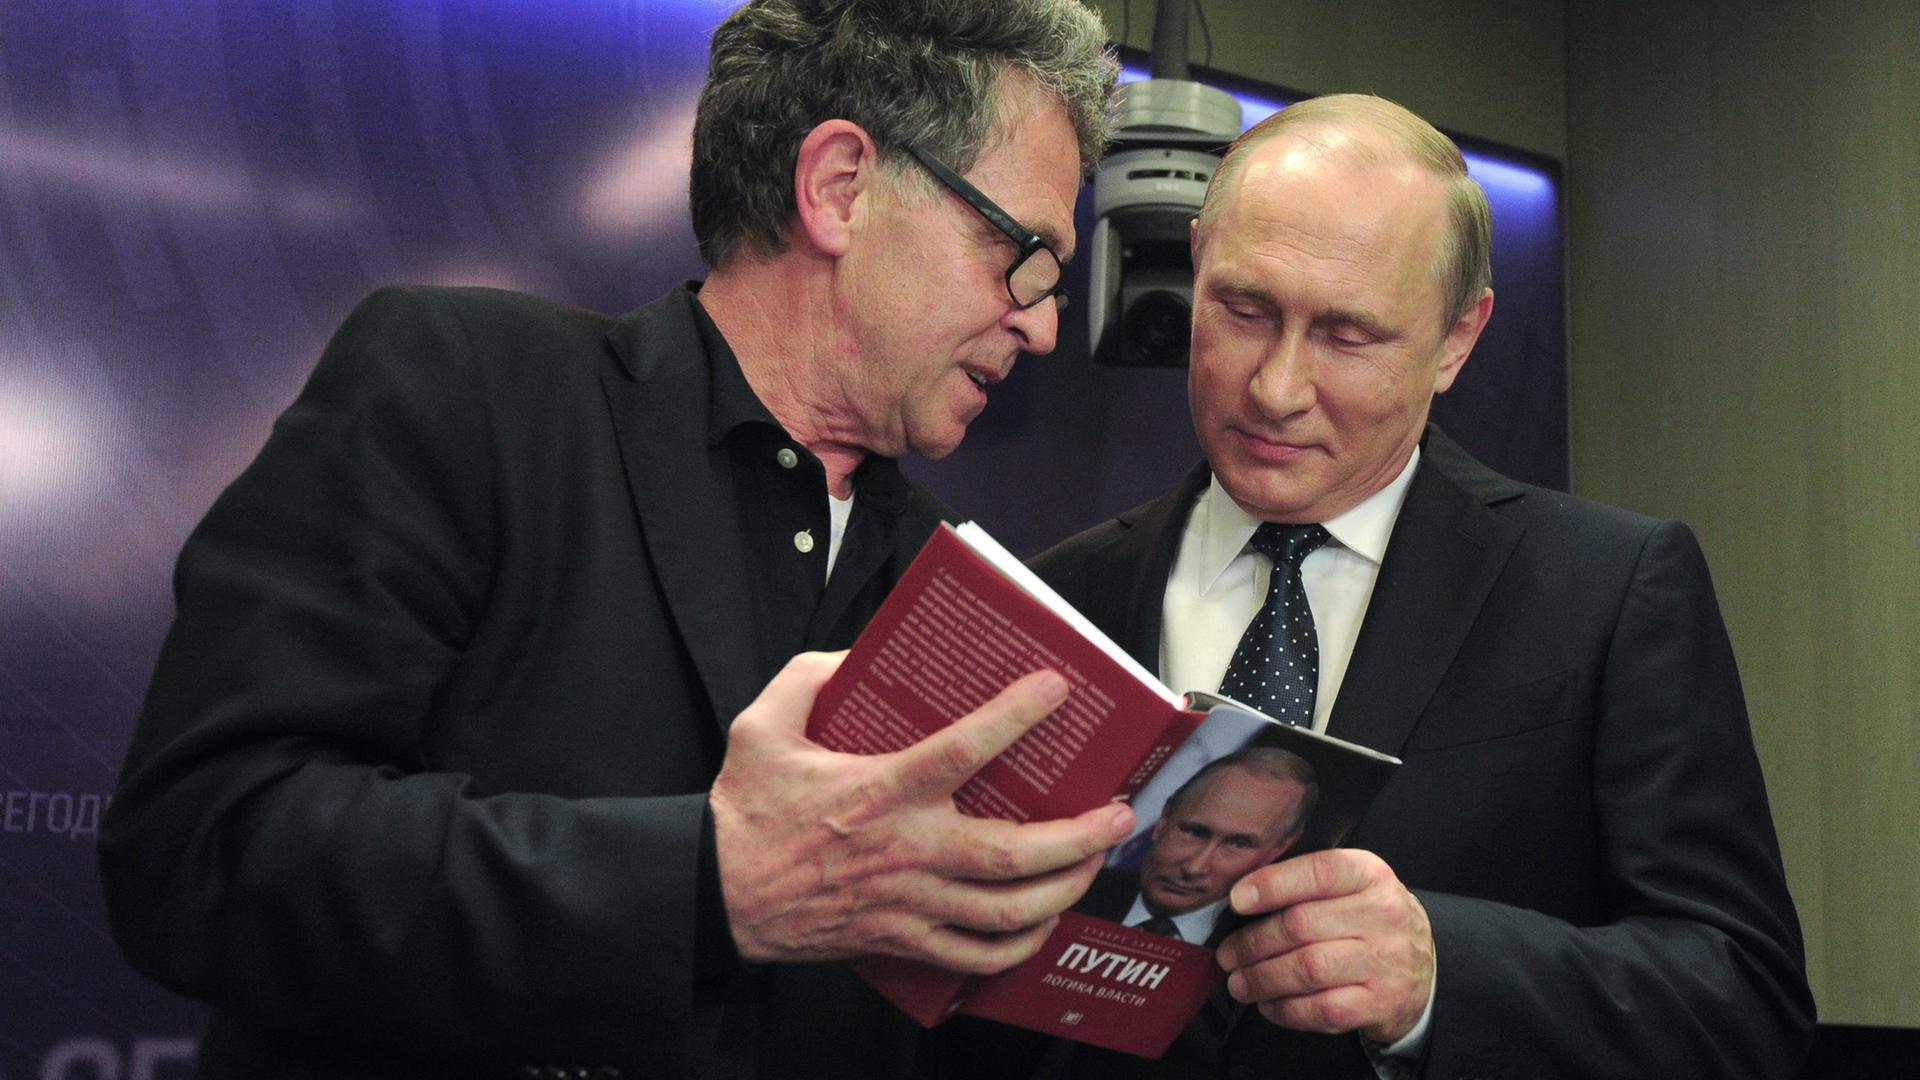 Der deutsche Journalist und Buchautor Hubert Seipel steht neben dem russischen Präsidenten Wladimir Putin. Die beiden schauen in die russische Version von Seibels Buch "Putin: Innenansichten der Macht", dass der Journalist aufgeschlagen in der Hand hält.  